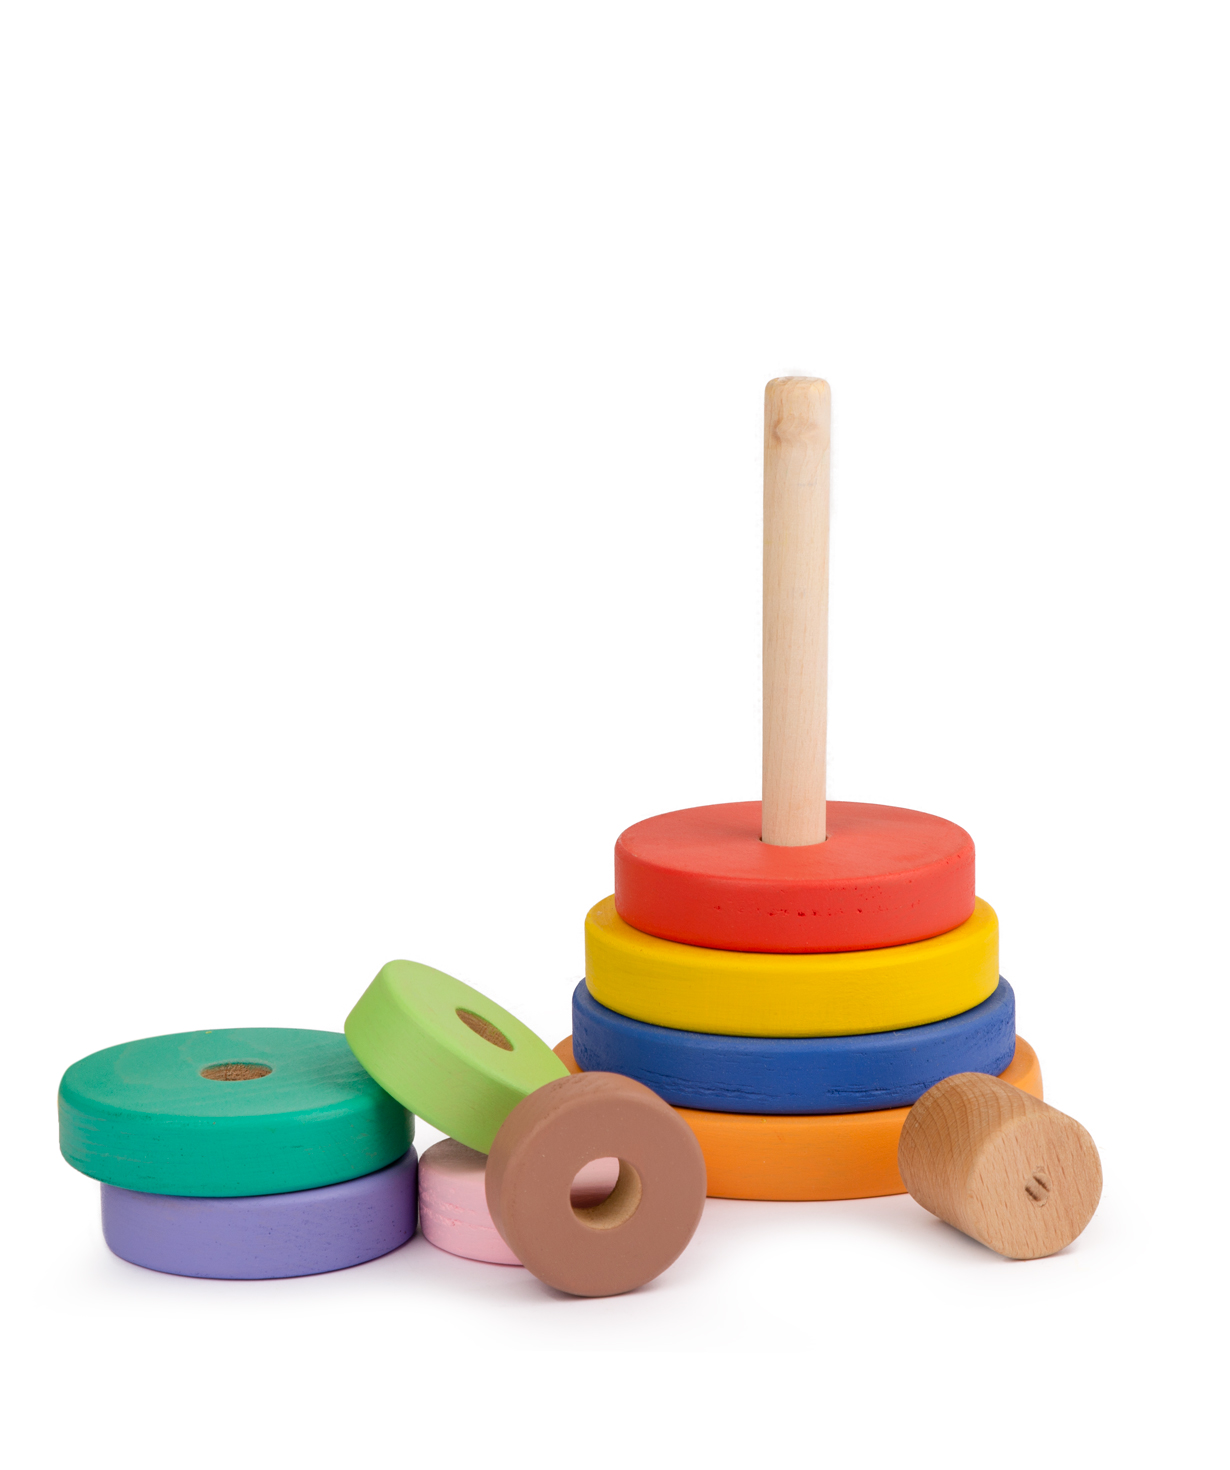 Խաղալիք «Im wooden toys» աշտարակ 23 սմ №2